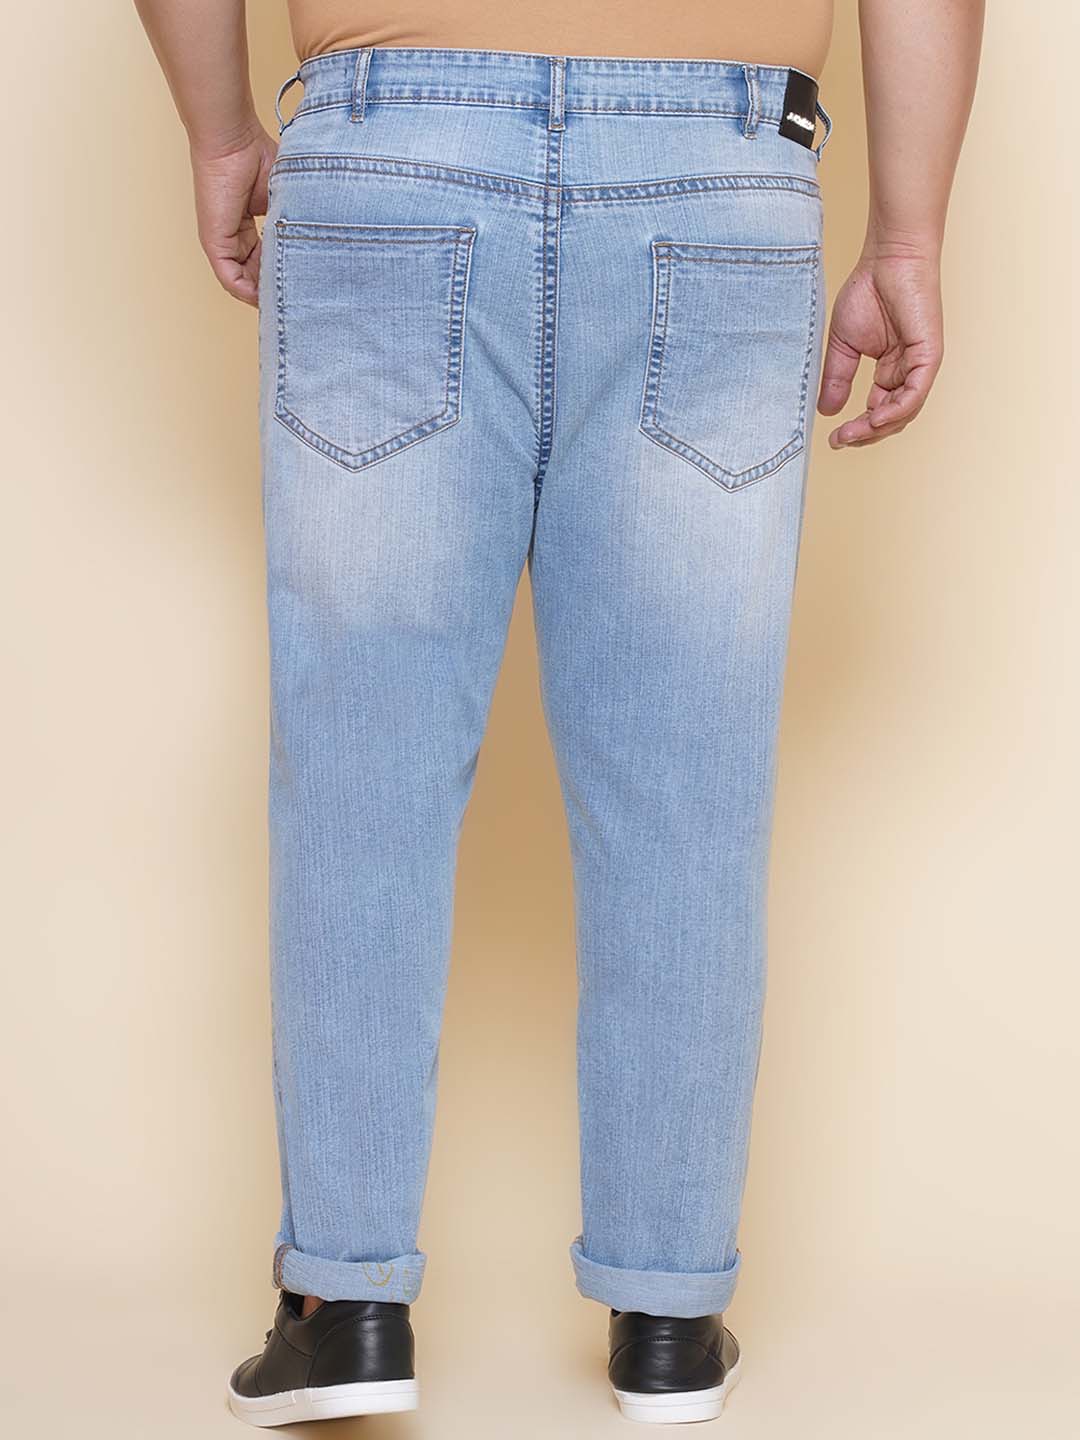 bottomwear/jeans/PJPJ60111/pjpj60111-5.jpg